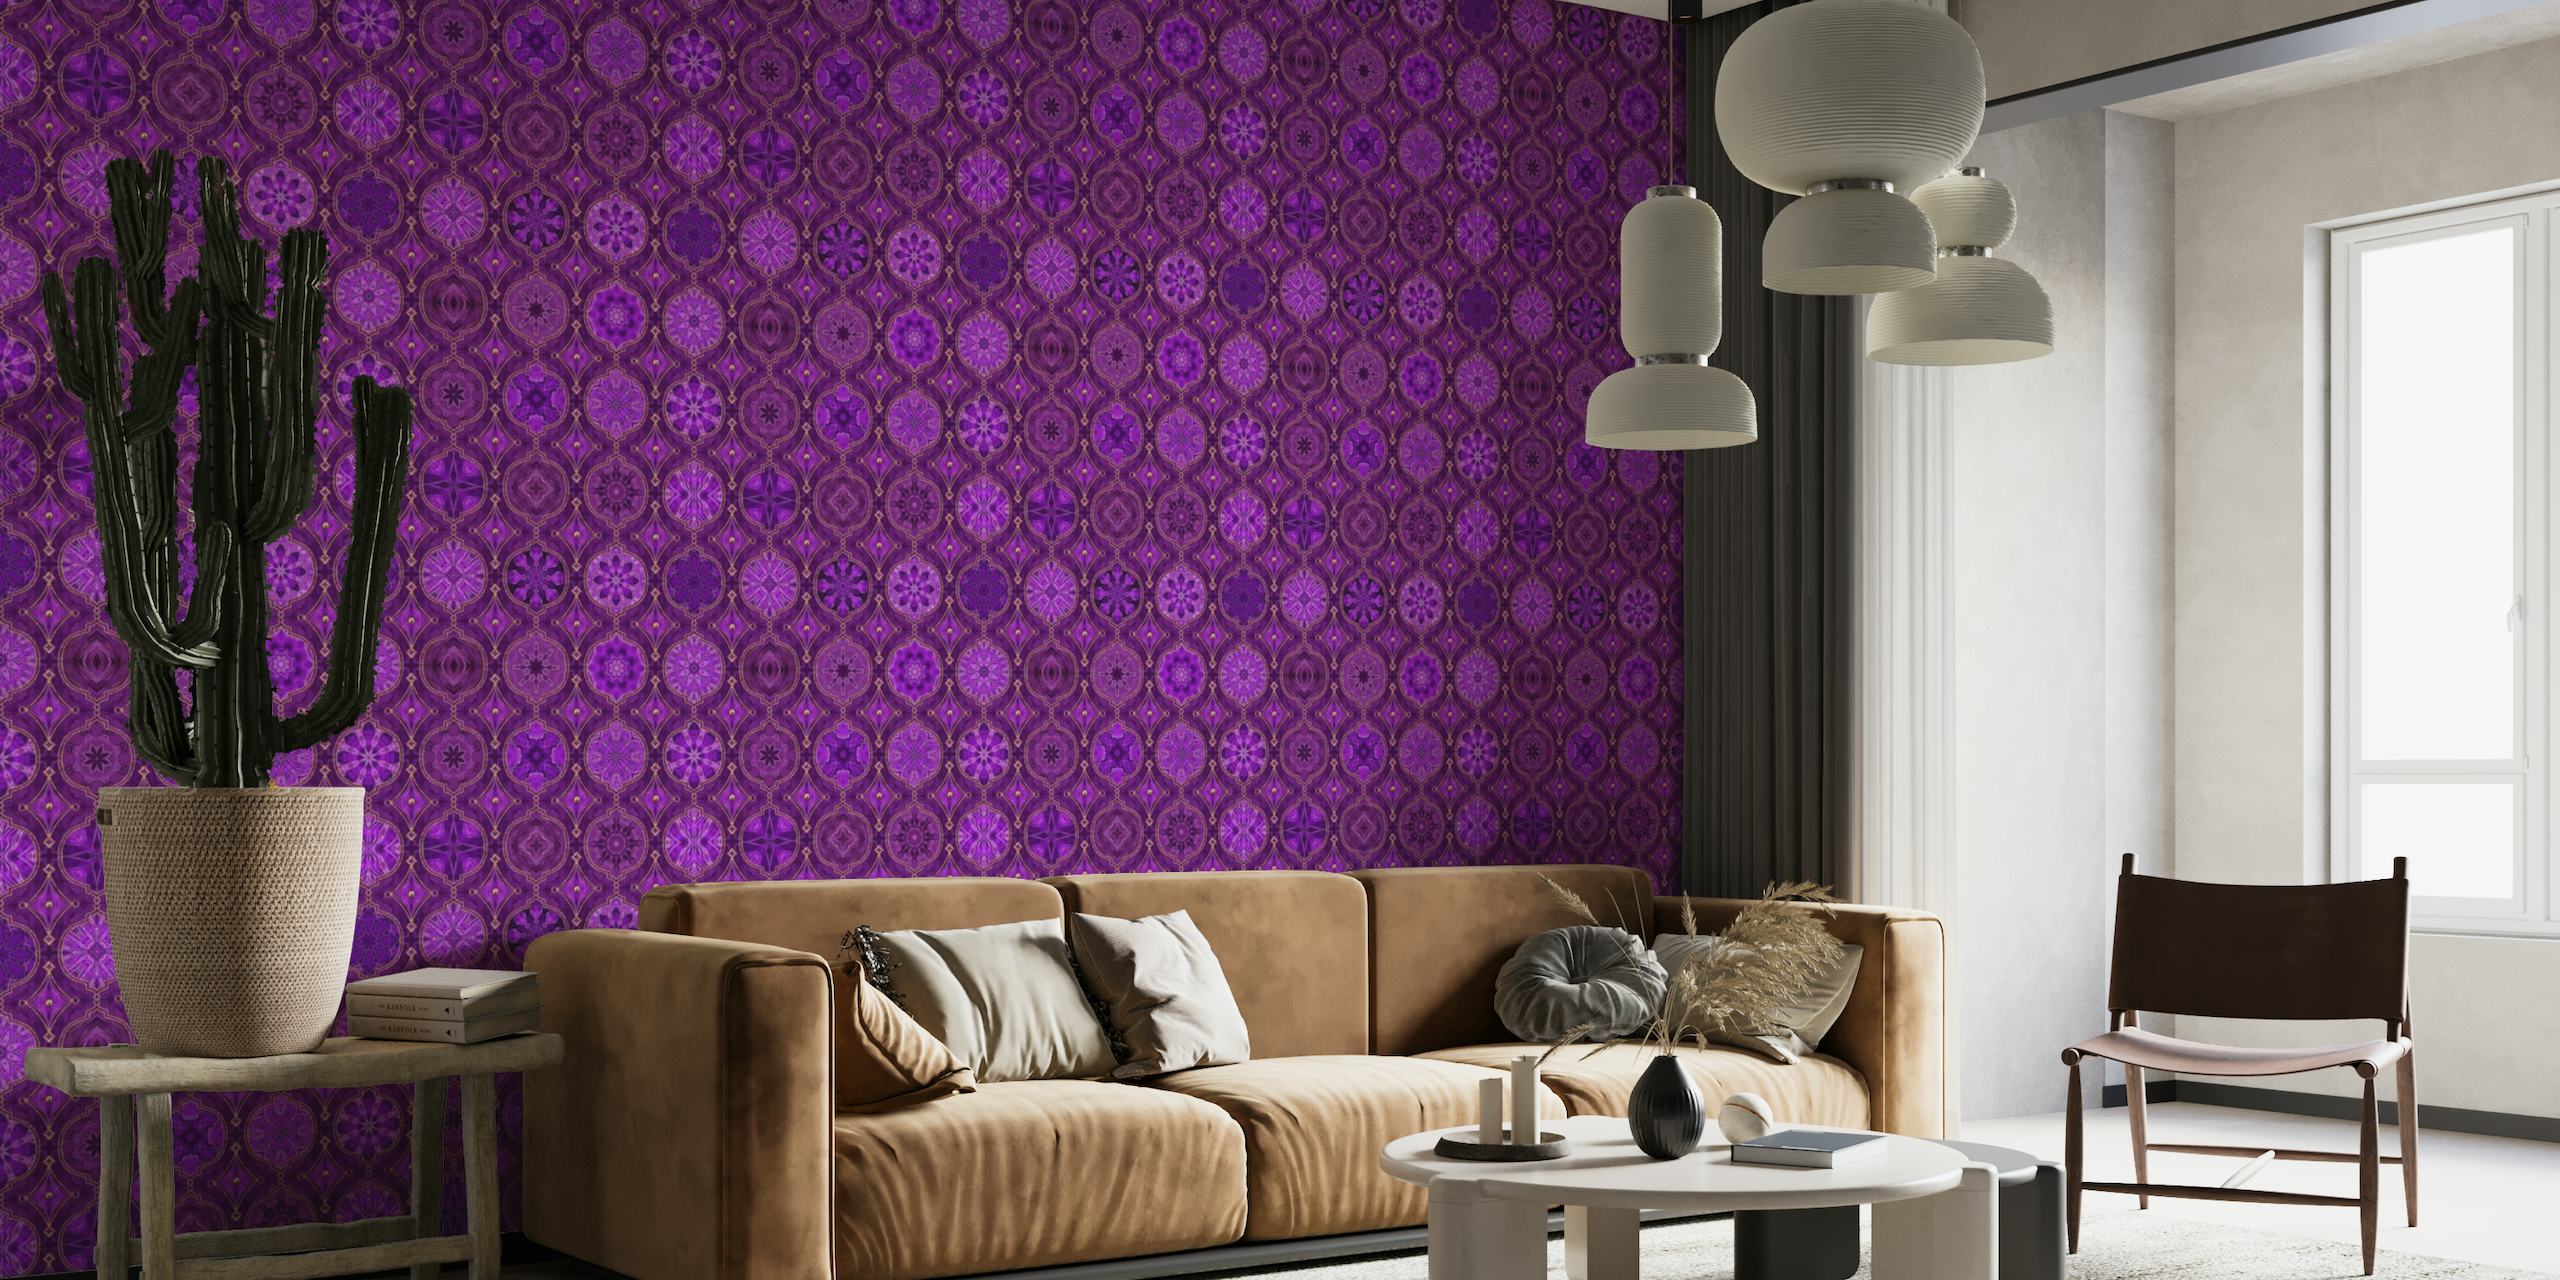 Treasures of Morocco Oriental Tile Design Fuchsia Purple Gold wallpaper